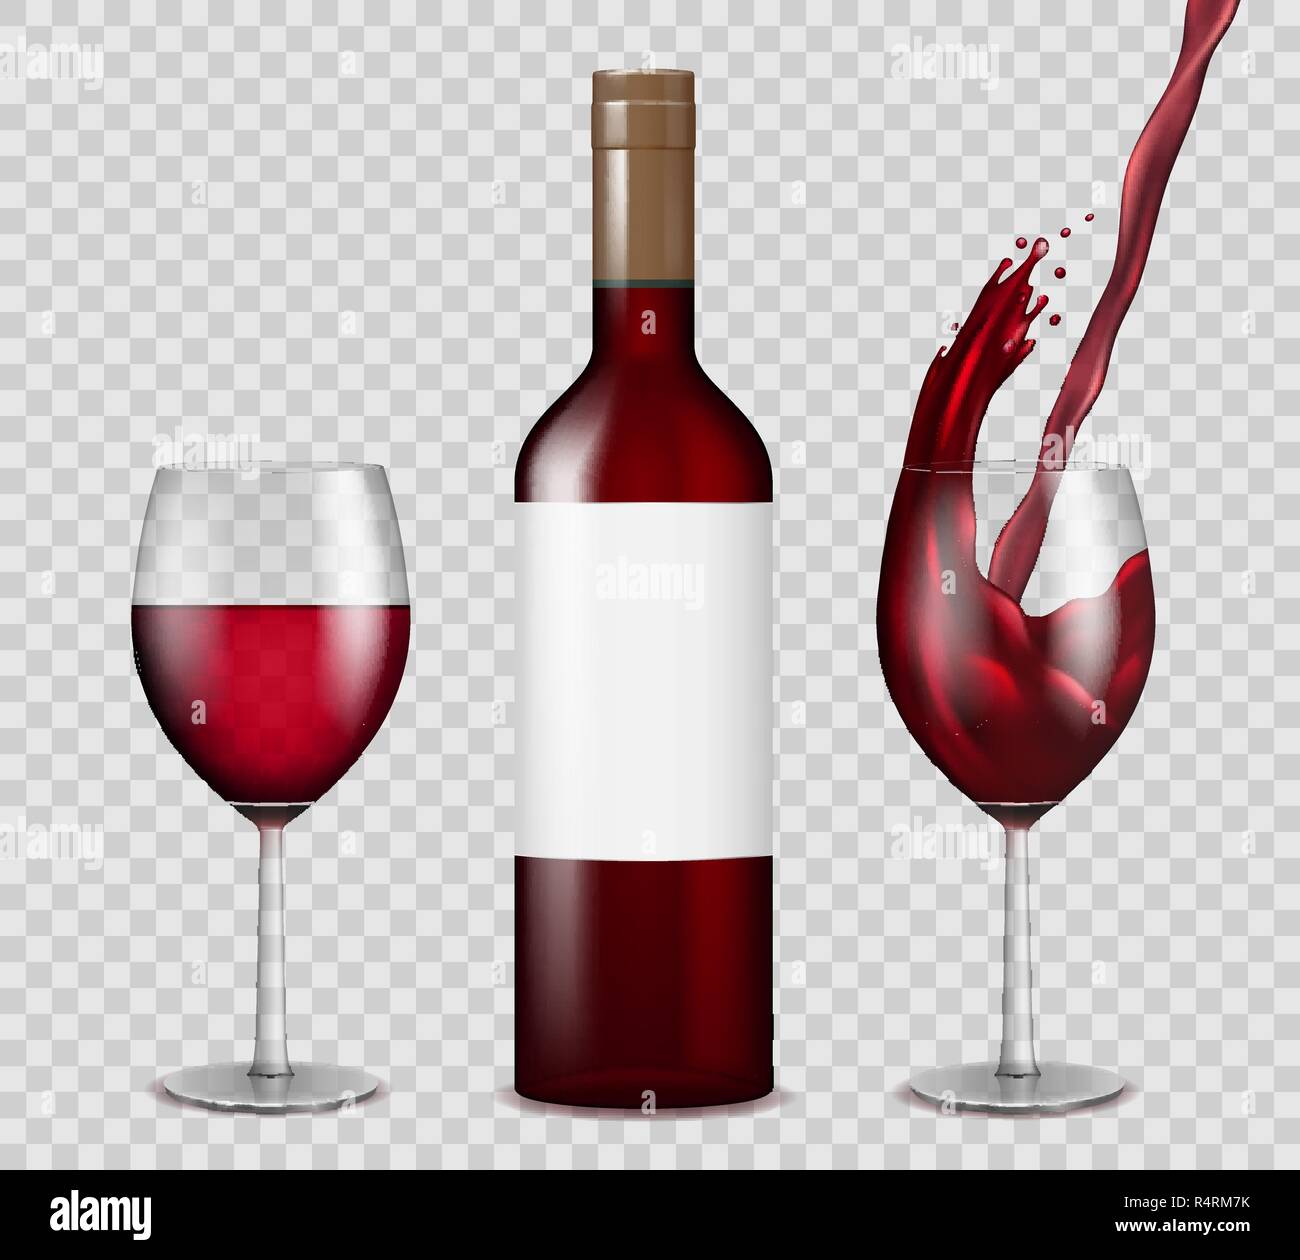 Trasparente bottiglia di vino e wineglasses mockup. vino rosso splash in bottiglia e bicchieri isolato. Illustrazione Vettoriale. Illustrazione Vettoriale